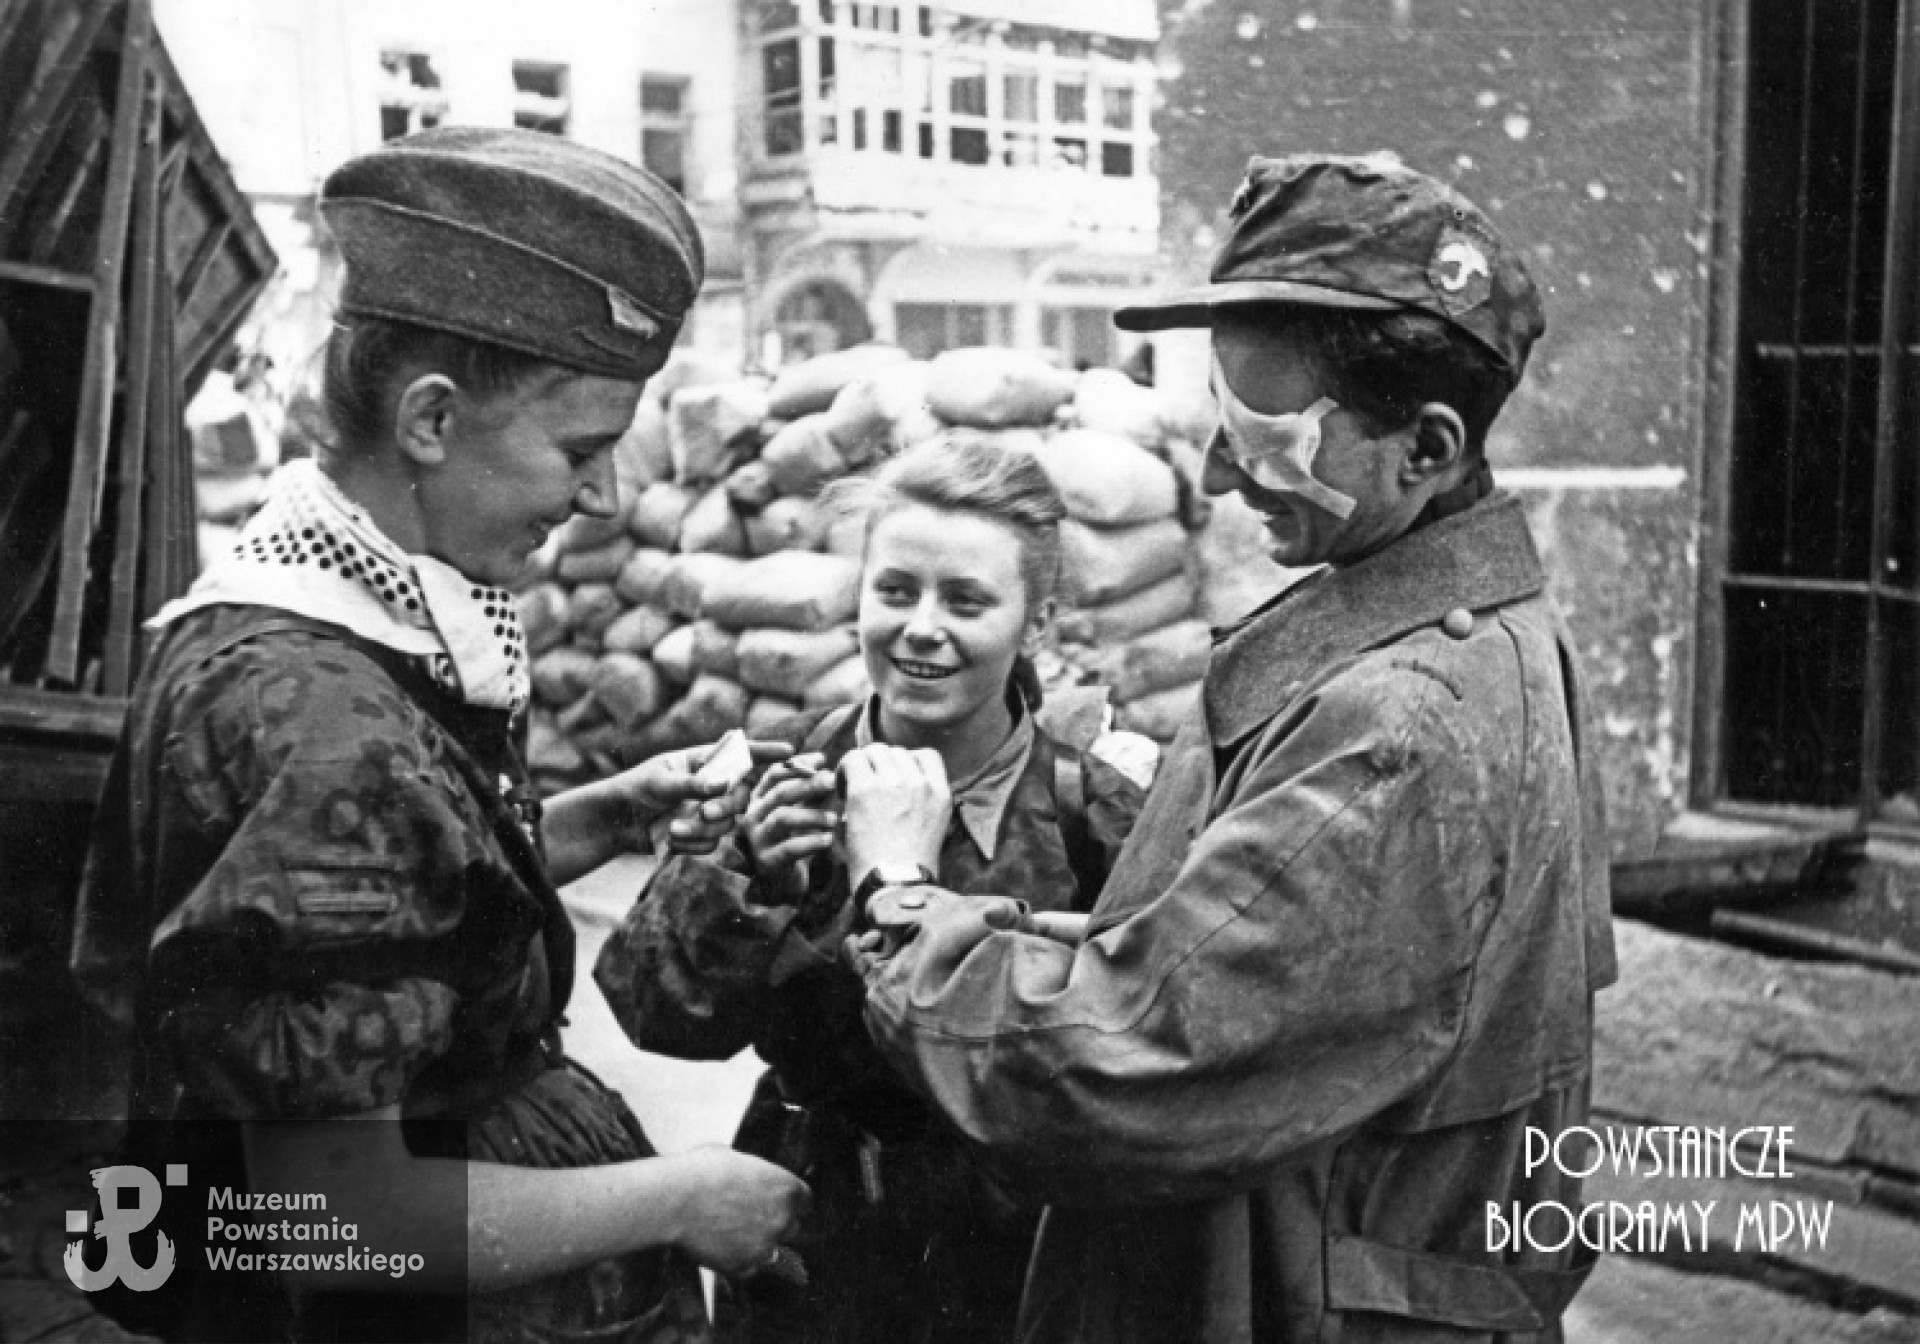 "Parasolarze" po wyjściu z kanału na ul. Wareckiej 1.09.1944 r. Zwracają uwagę: znak baonu naszyty na niemiecką czapkę polową i apaszka dziewczyny. Różnokolorowe chustki przewiązane pod szyją, w czasie walk na Starym Mieście stały się znakiem rozpoznawczym oddziałów, jednolicie ubranych w zdobyczne "panterki". Każdy oddział używał chust w innym kolorze. Od lewej stoją: nierozpoznana łączniczka lub sanitariuszka, w środku "Kama" (Maria Stypułkowska-Chojecka), po prawej ranny kpr. pchor. "Krzych" (Krzysztof Palester - poległ 21.09.1944 na Górnym Czerniakowie). W tle widoczny Hotel "Savoy" ul. Nowy Świat 58. Fot. Joachim Joachimczyk. Ze zbiorów Fototeki MPW, sygn. MPW-IK/2960